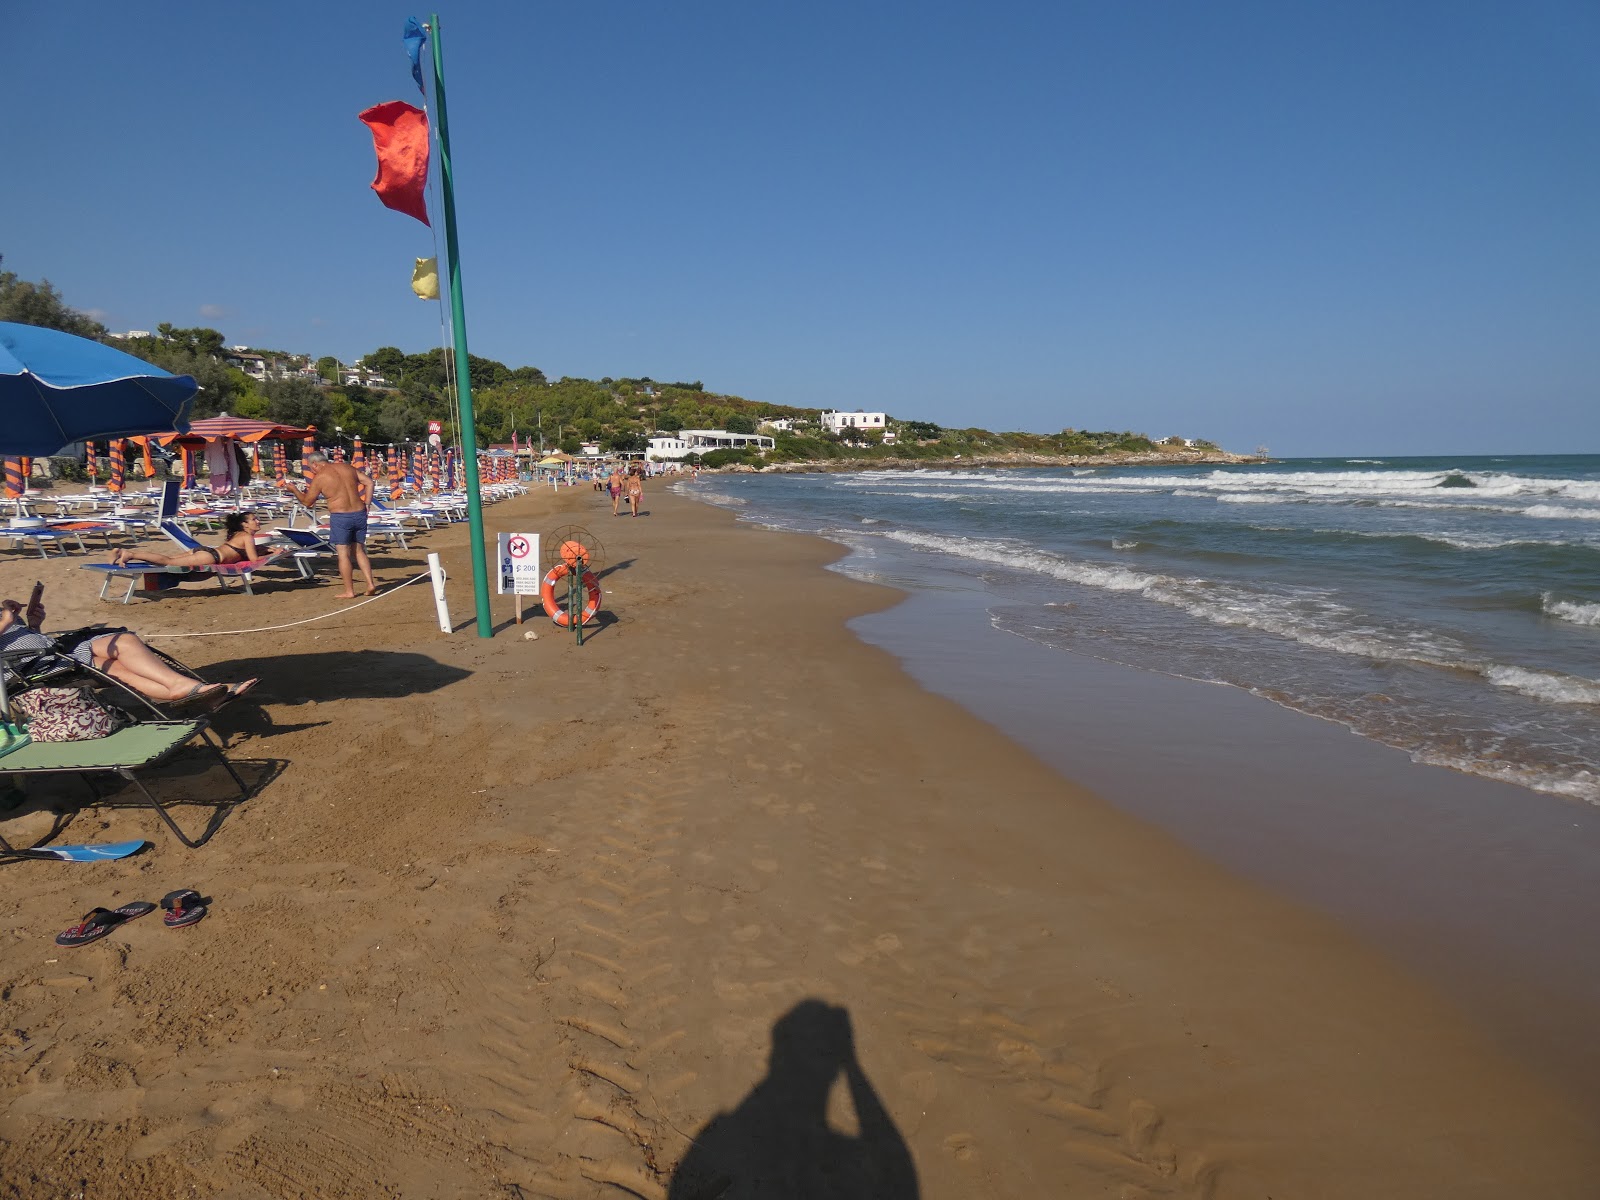 Foto de Spiaggia di San Nicola - lugar popular entre los conocedores del relax